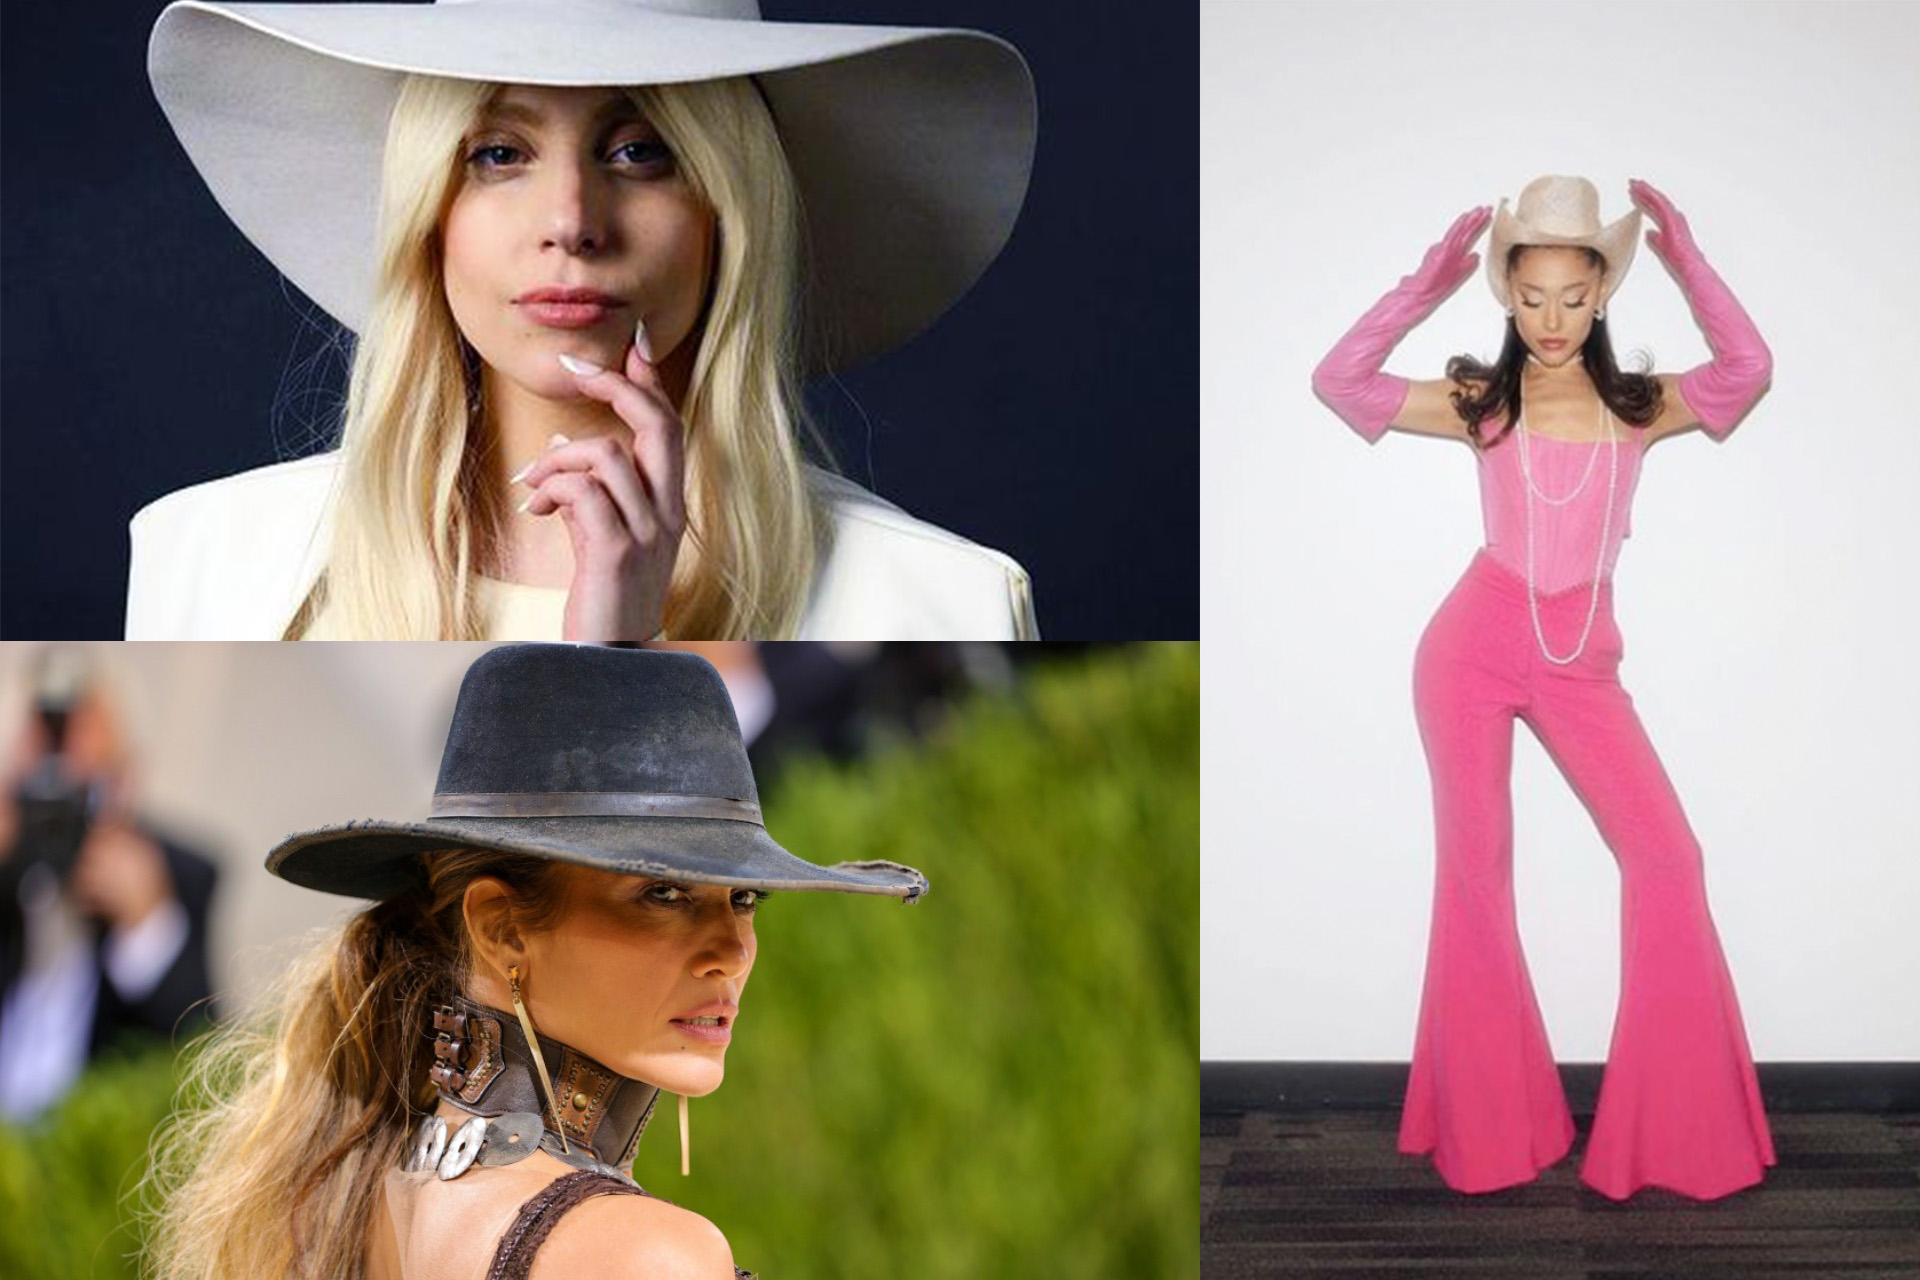 Las celebrities también ponen de moda los sombreros cowboy